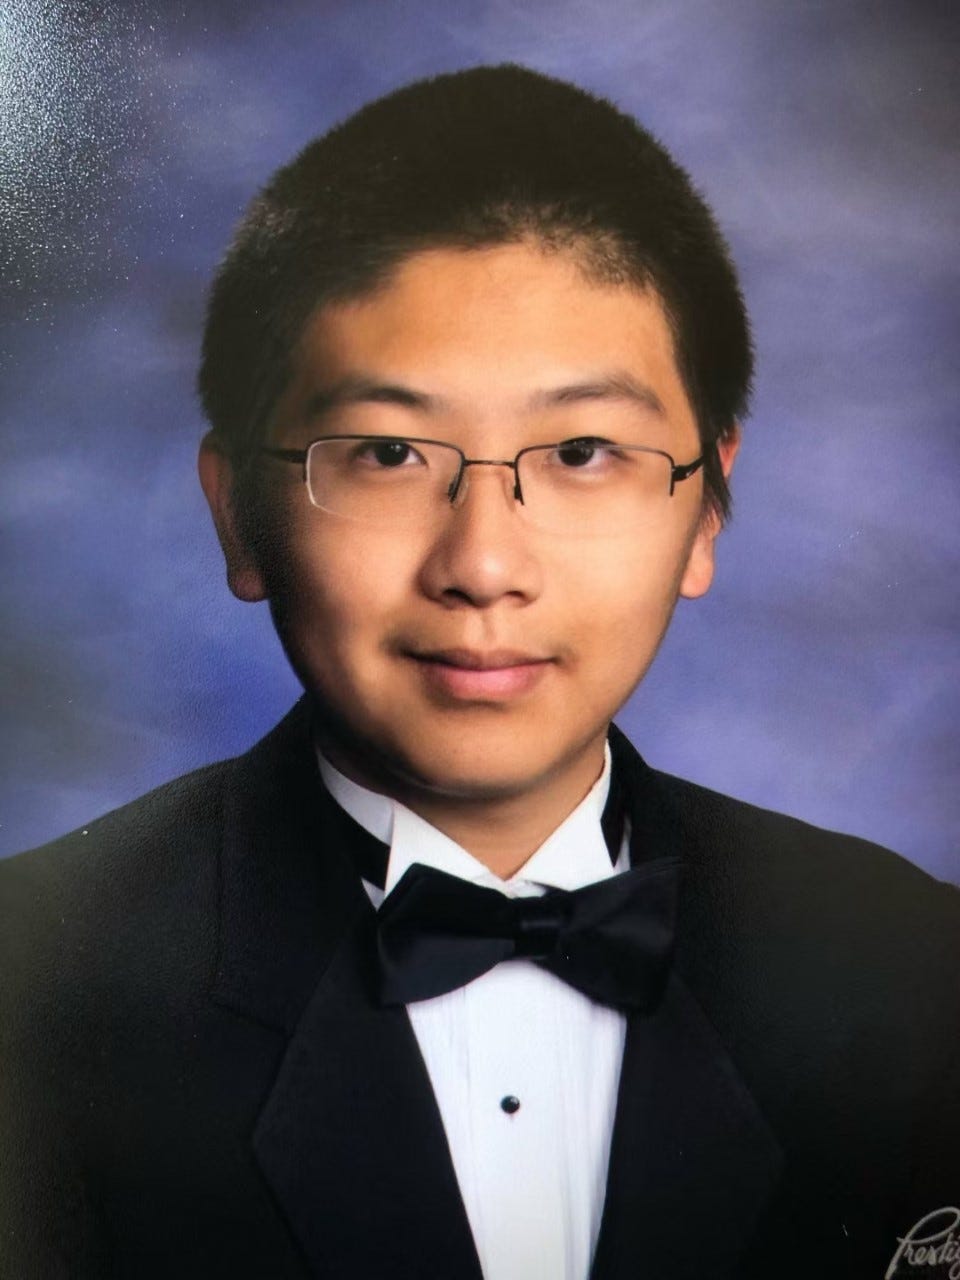 A photograph of Max as a high school senior wearing a tuxedo.